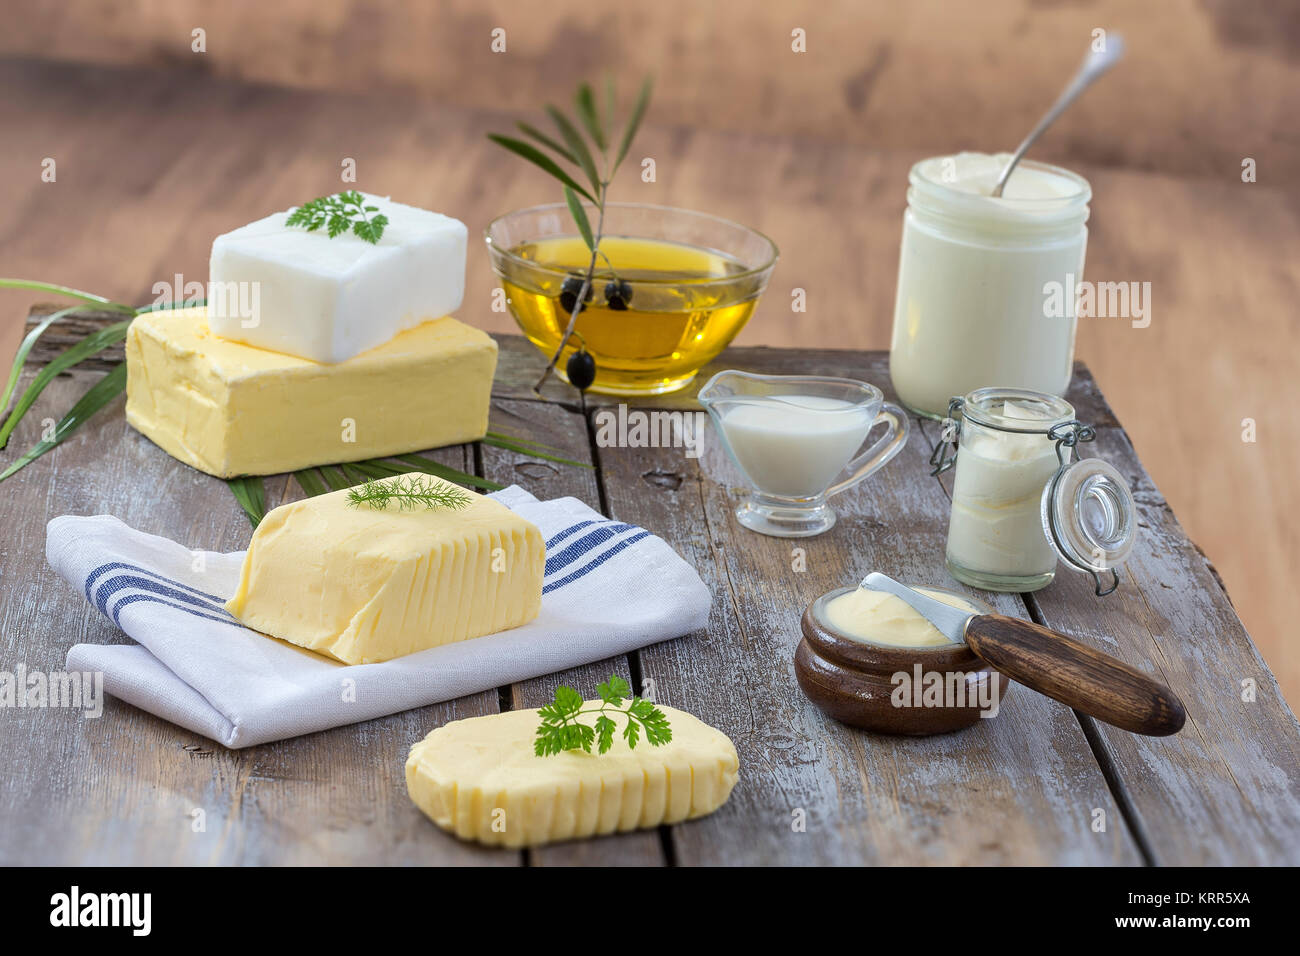 Grassi alimentari e olio : insieme di prodotti lattiero-caseari e olio e grassi animali su uno sfondo di legno Foto Stock